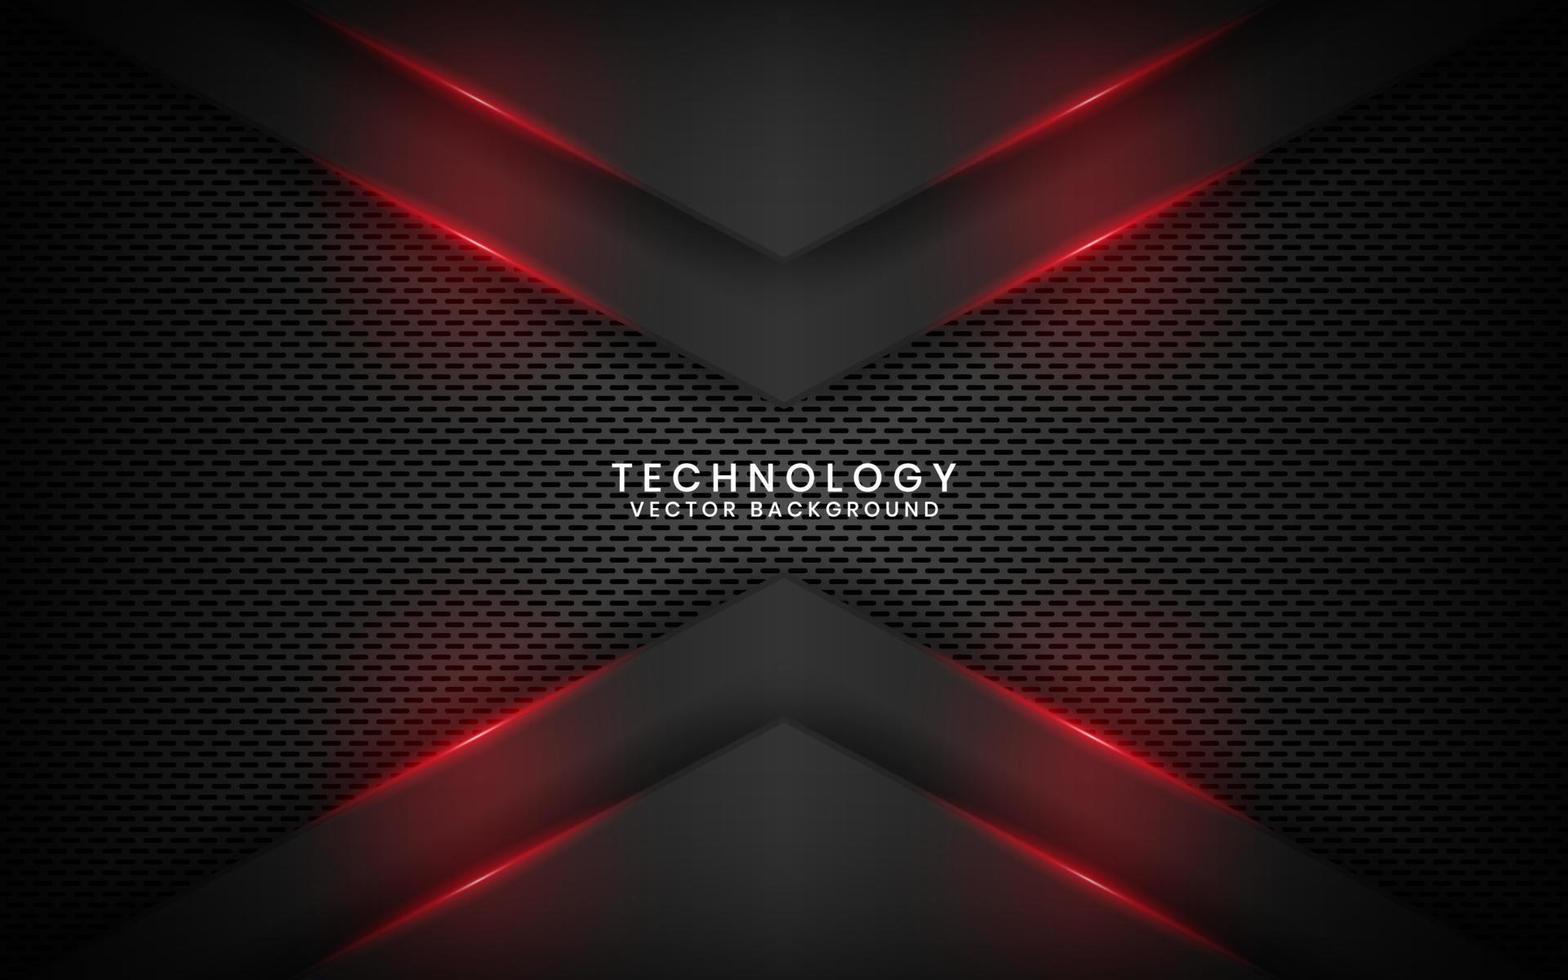 abstracte 3d zwarte technologie achtergrond overlap laag op donkere ruimte met rood licht pijl effect decoratie. moderne sjabloonelement toekomstige stijl voor flyer, banner, omslag, brochure of bestemmingspagina vector